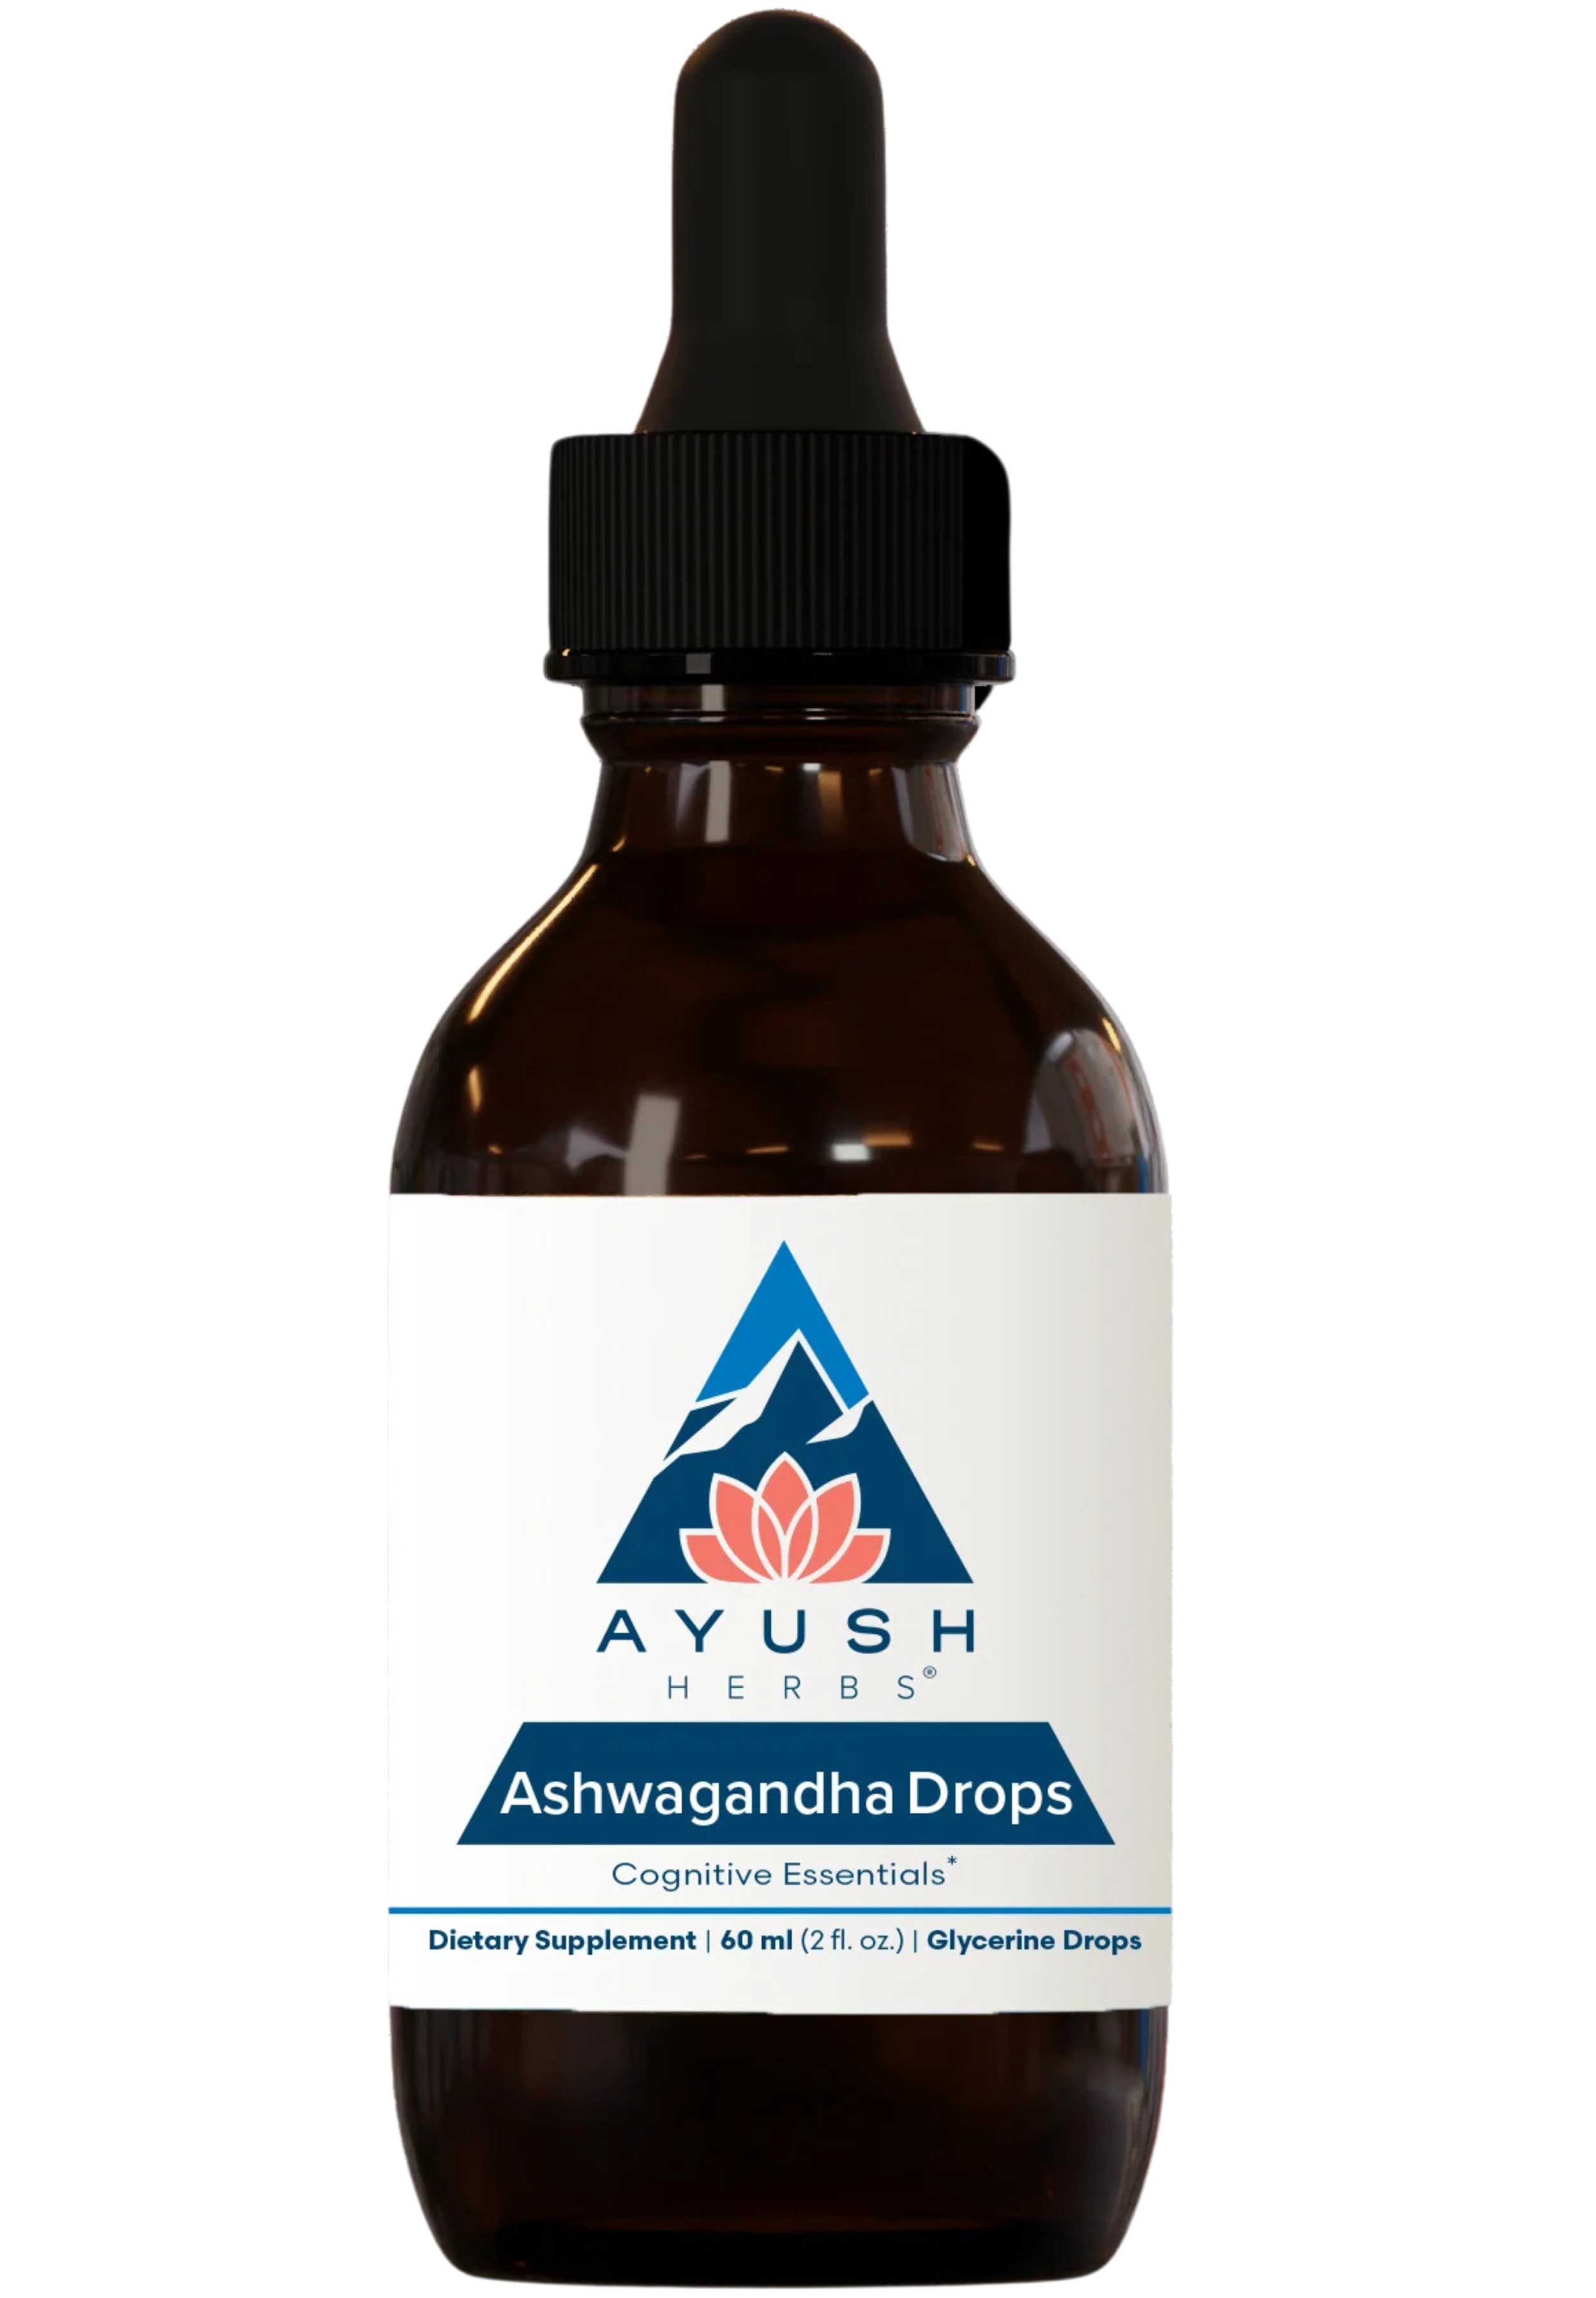 Ayush Herbs Adult Ashwagandha Drops